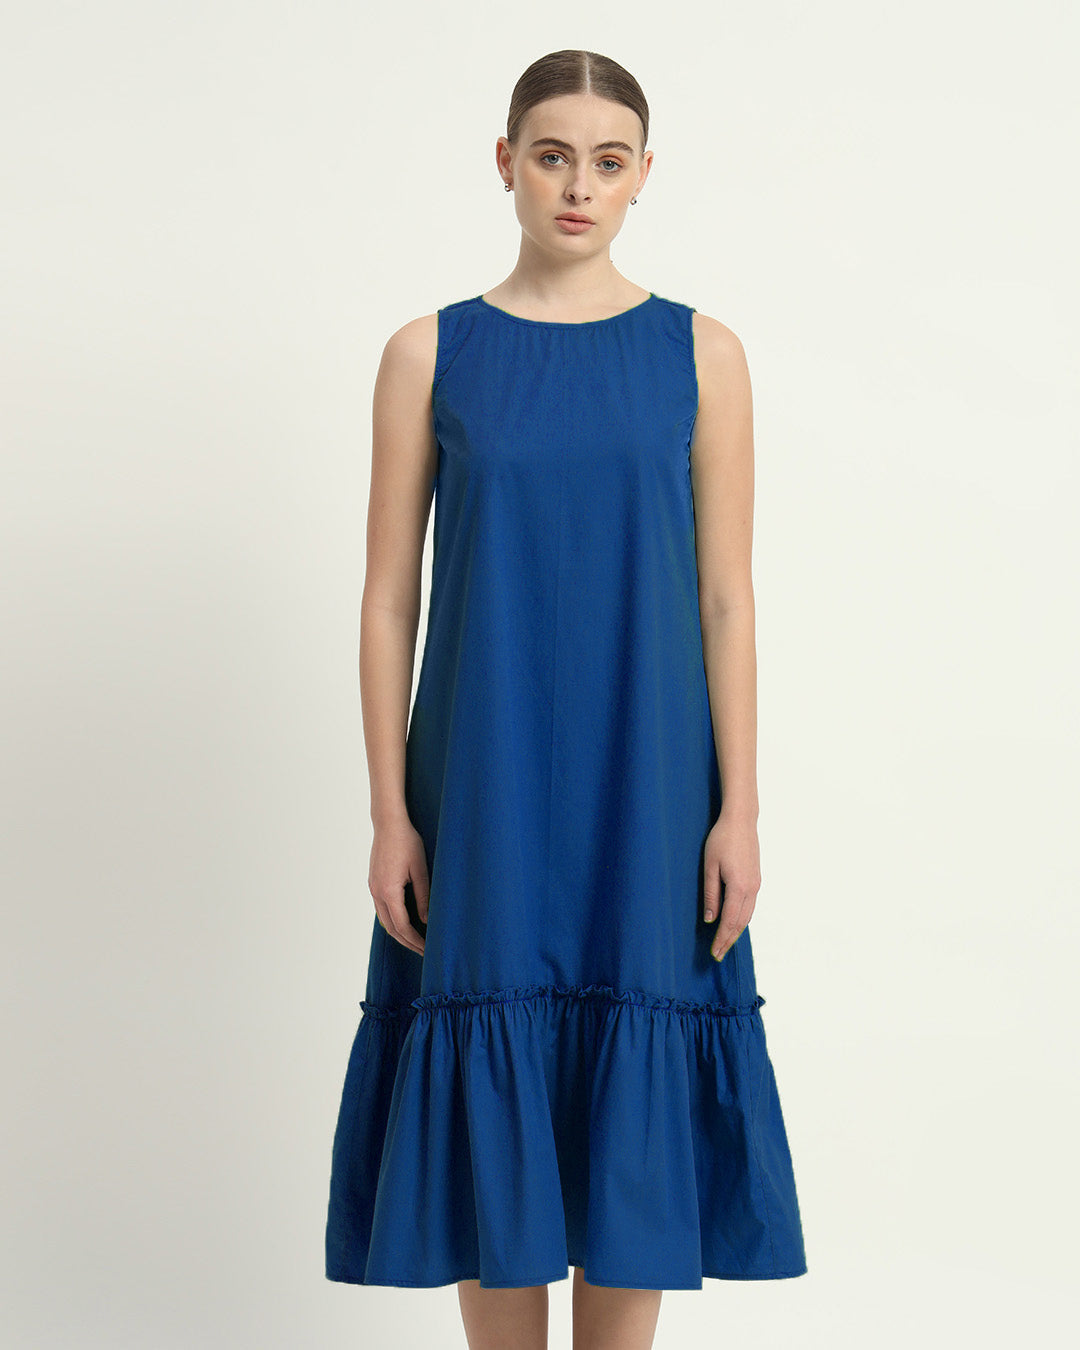 The Cobalt Millis Cotton Dress